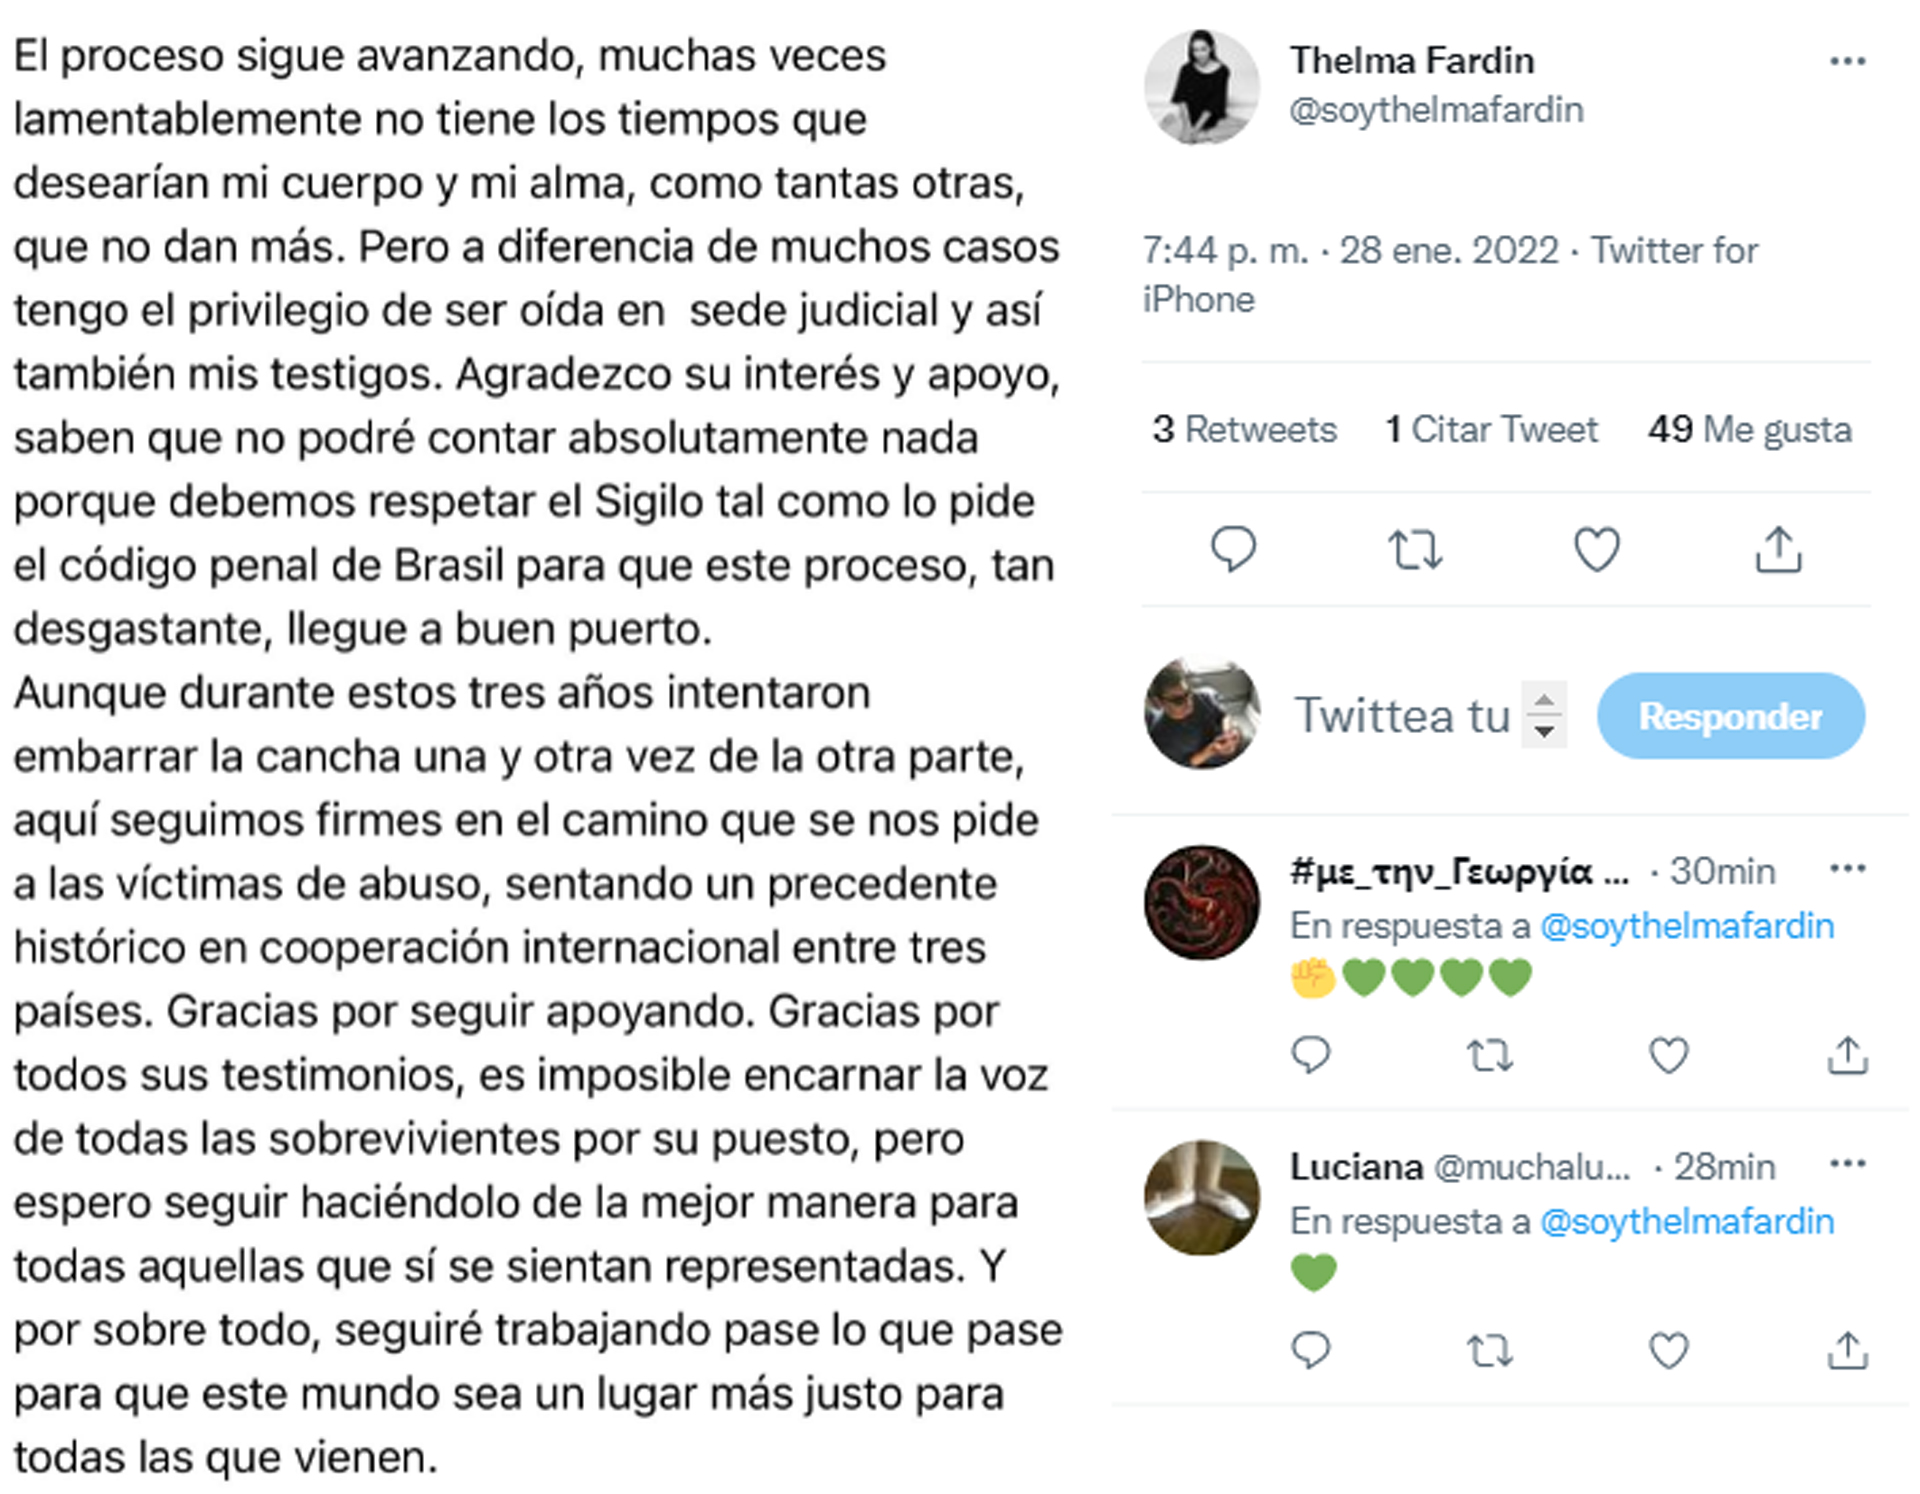 El comunicado que Thelma Fardin difundió en sus redes sociales tras la reanudación del juicio a Juan Darthés (Foto: Twitter)